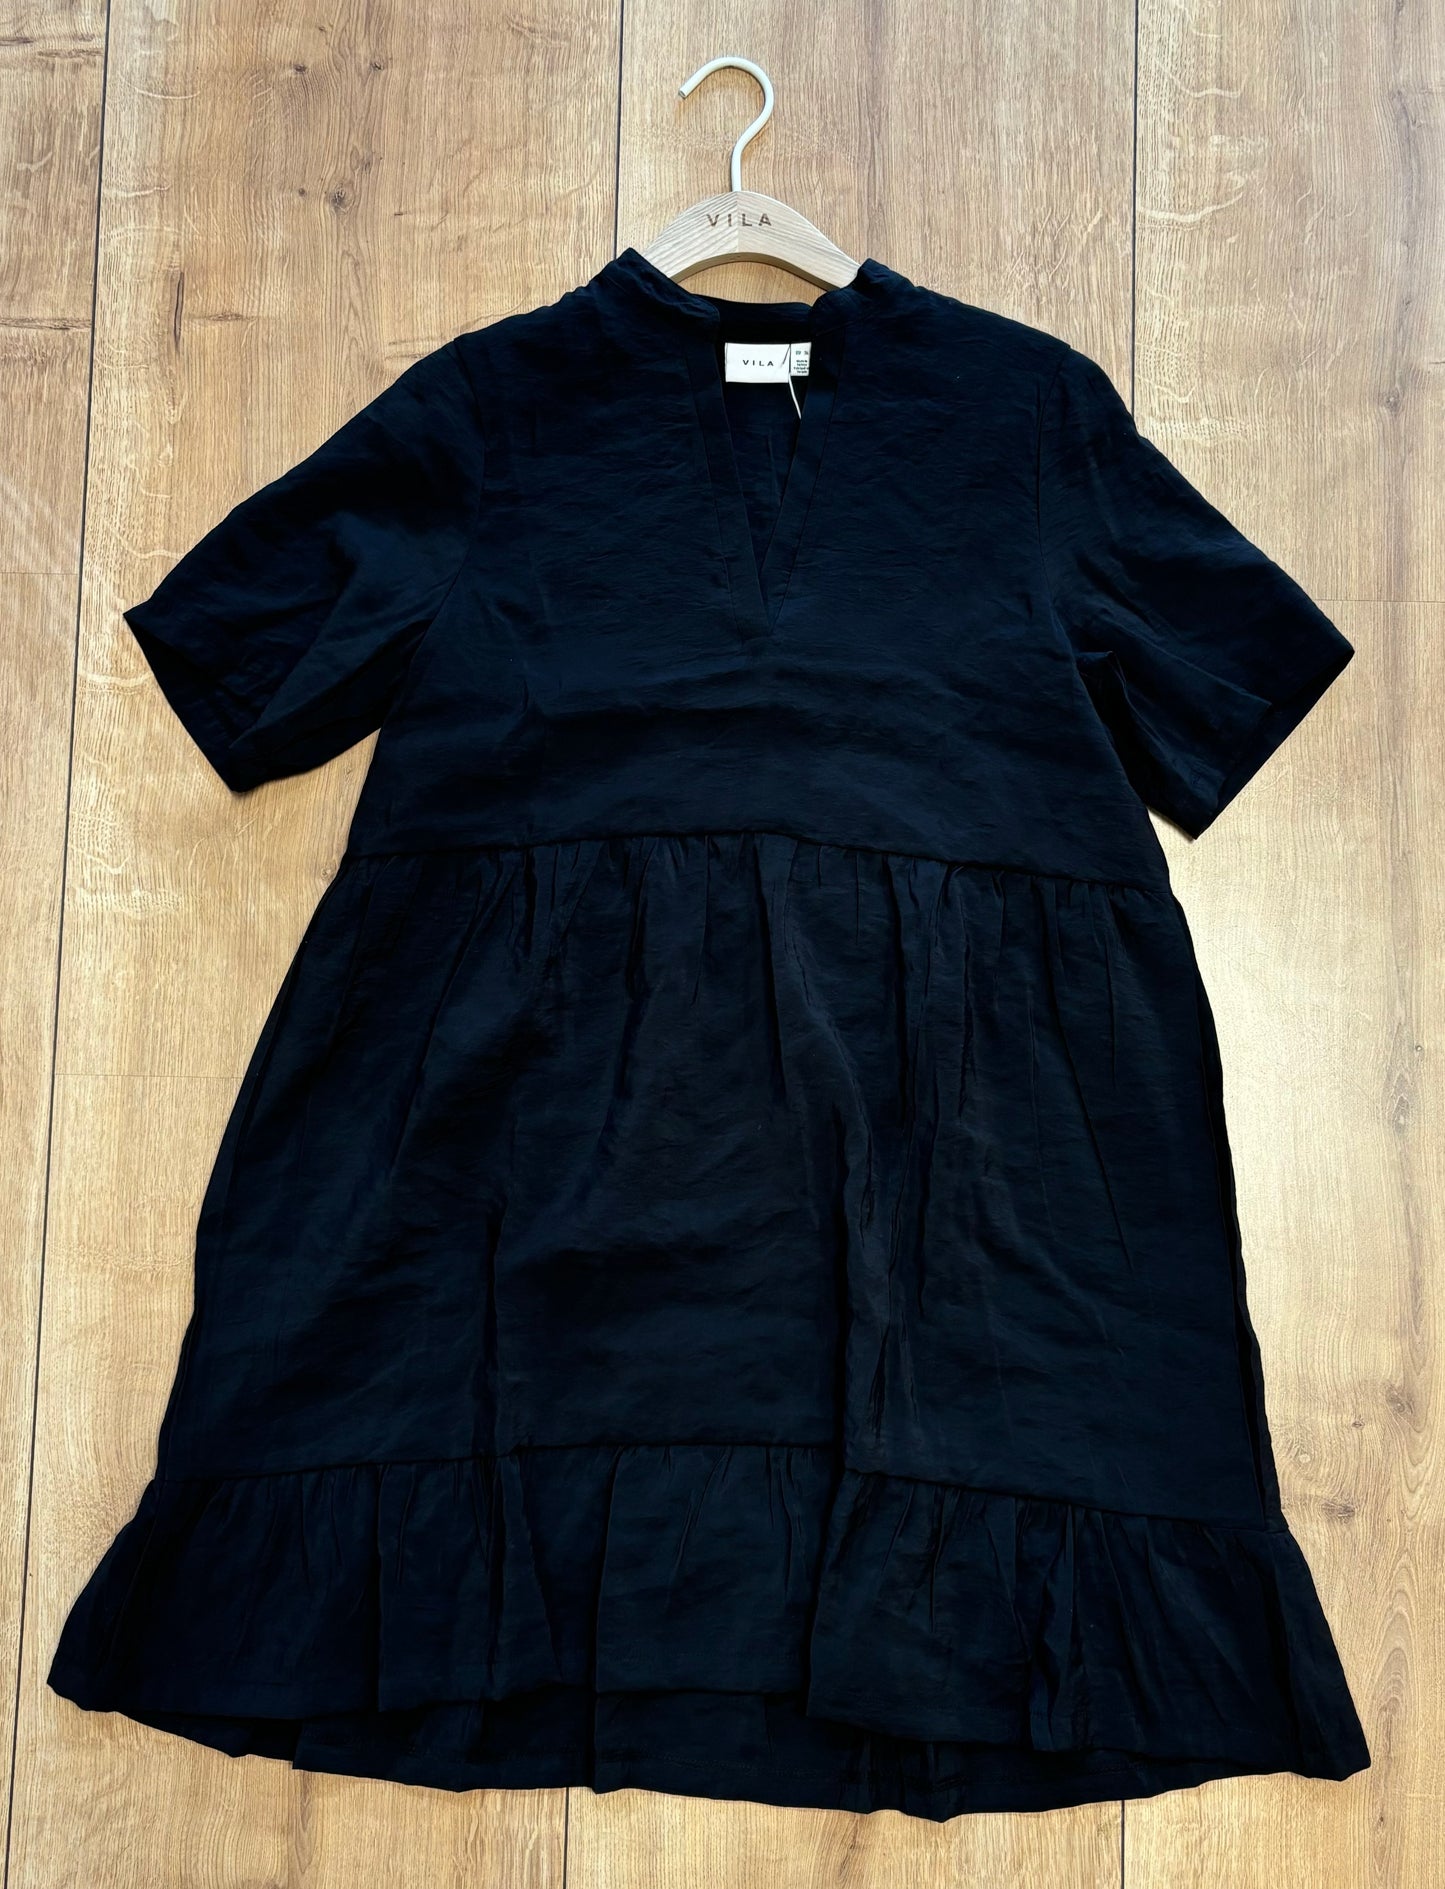 Vila, Virumme s/s Dress Black